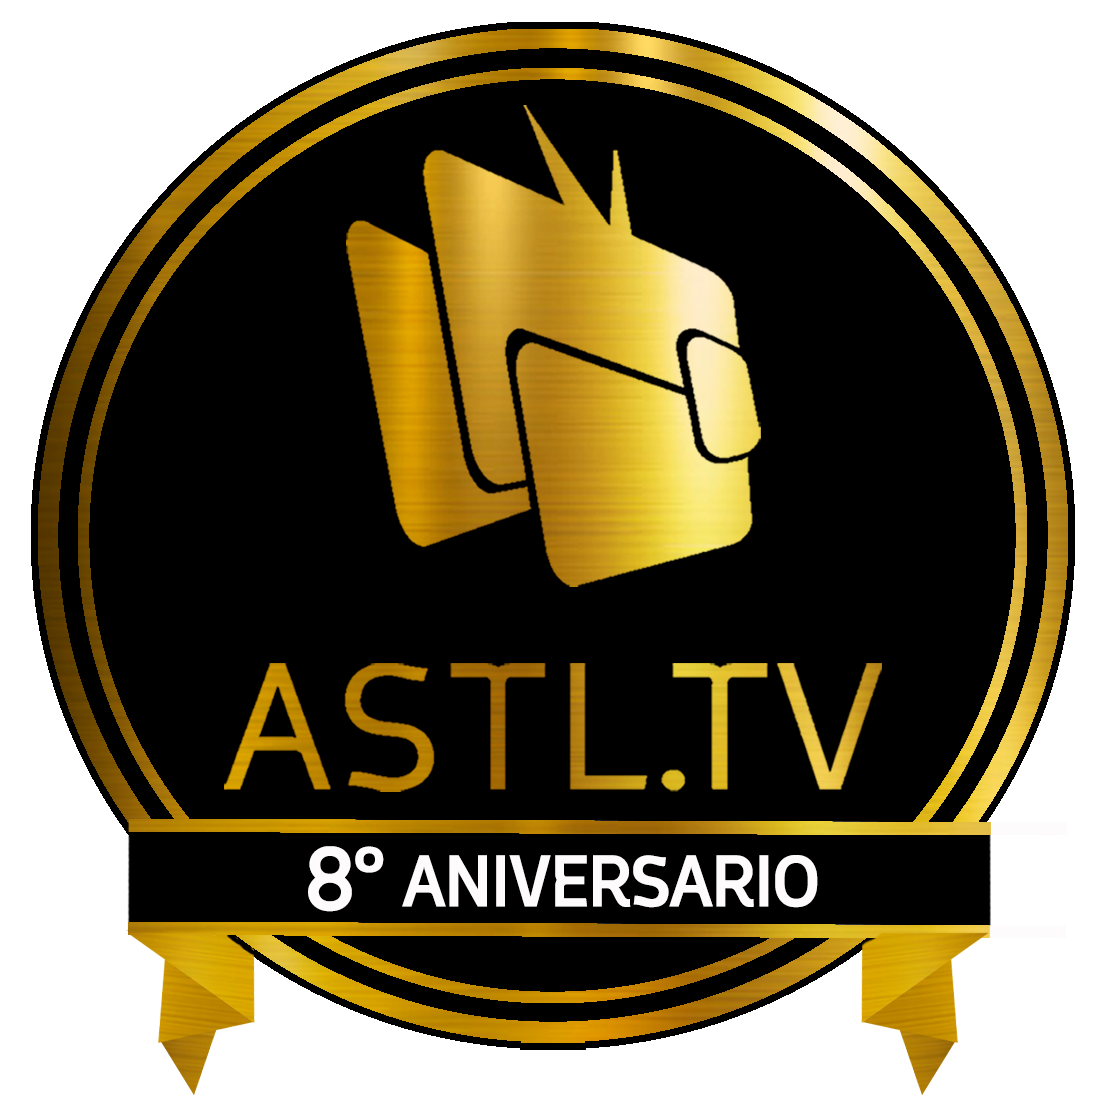 8 AÑOS DE ASTL.TV FELICIDADES